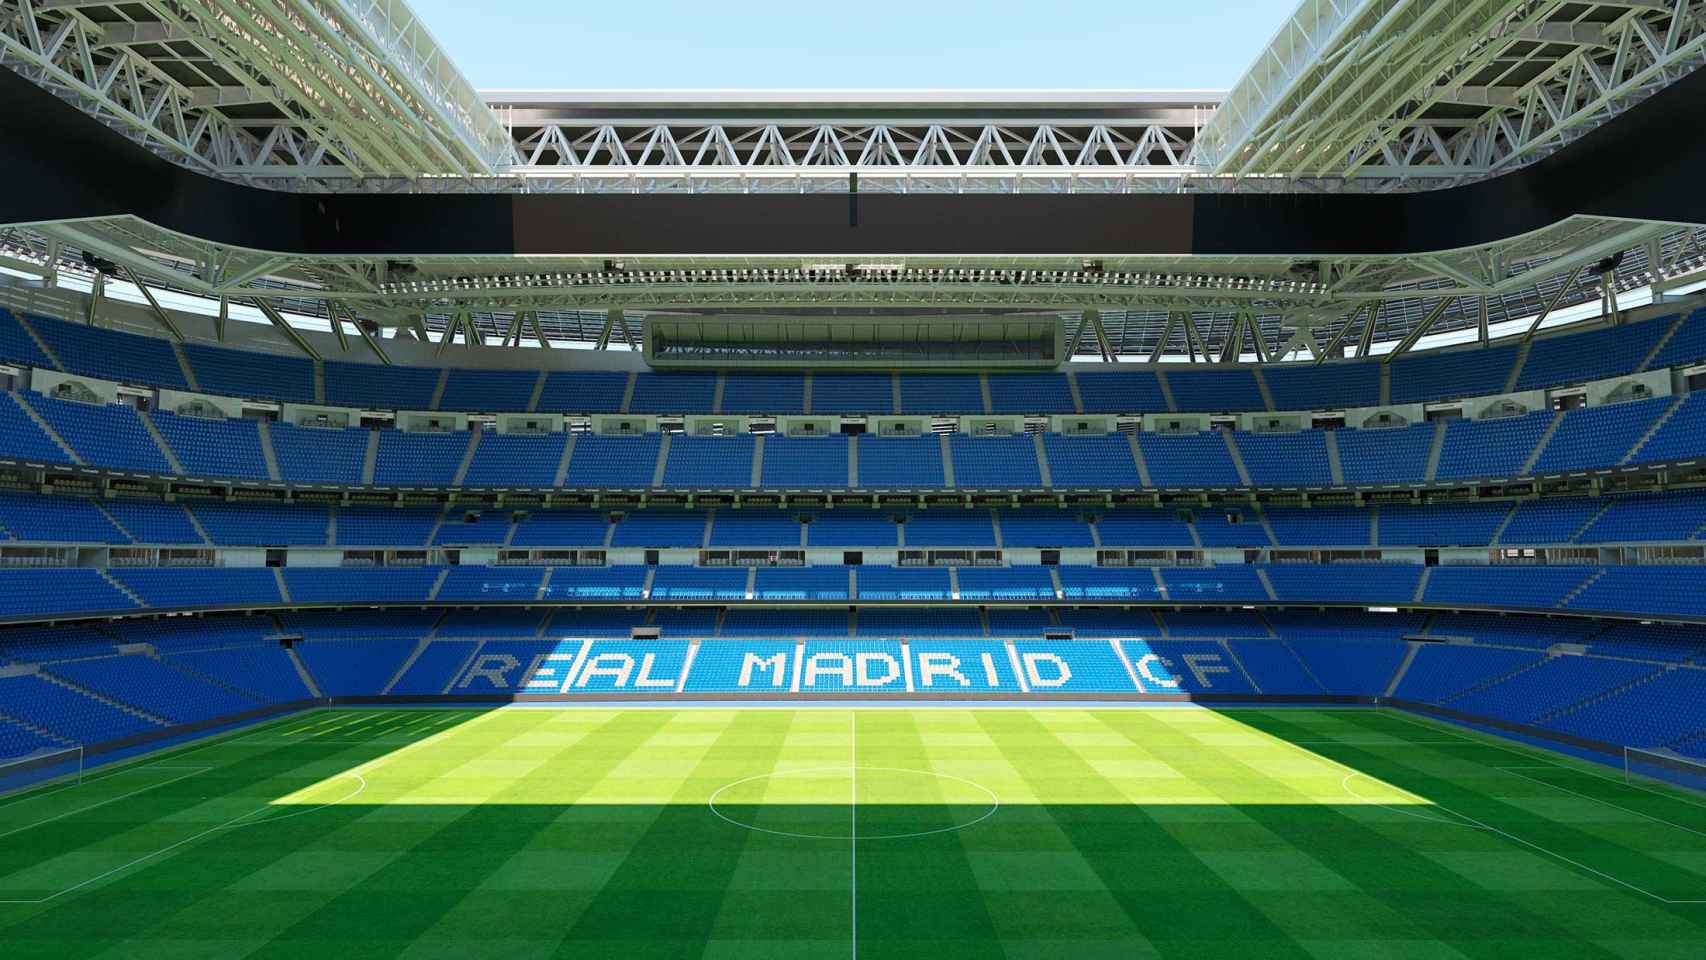 Visualización de cómo quedará el Estadio Santiago Bernabéu tras la finalización de la obra